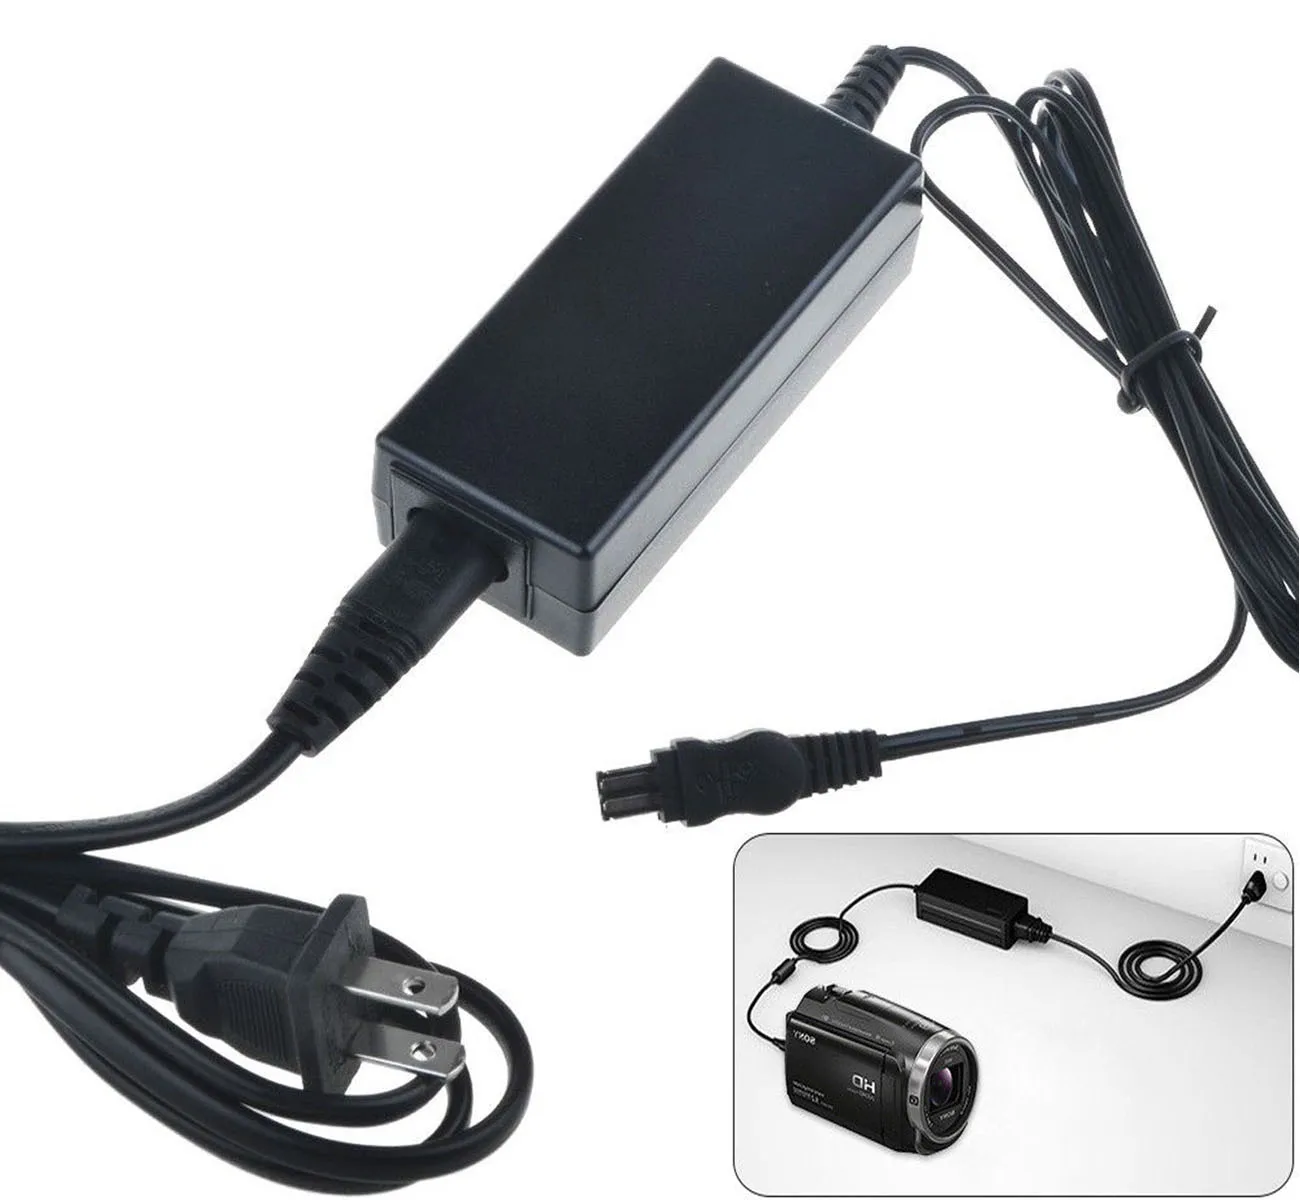 AC Adaptor Incarcator pentru Sony DCR-TRV510E, DCR-TRV520E, DCR-TRV530E, DCR-TRV620E, DCR-TRV720E, TRV730E, TRV740E camera Video Handycam